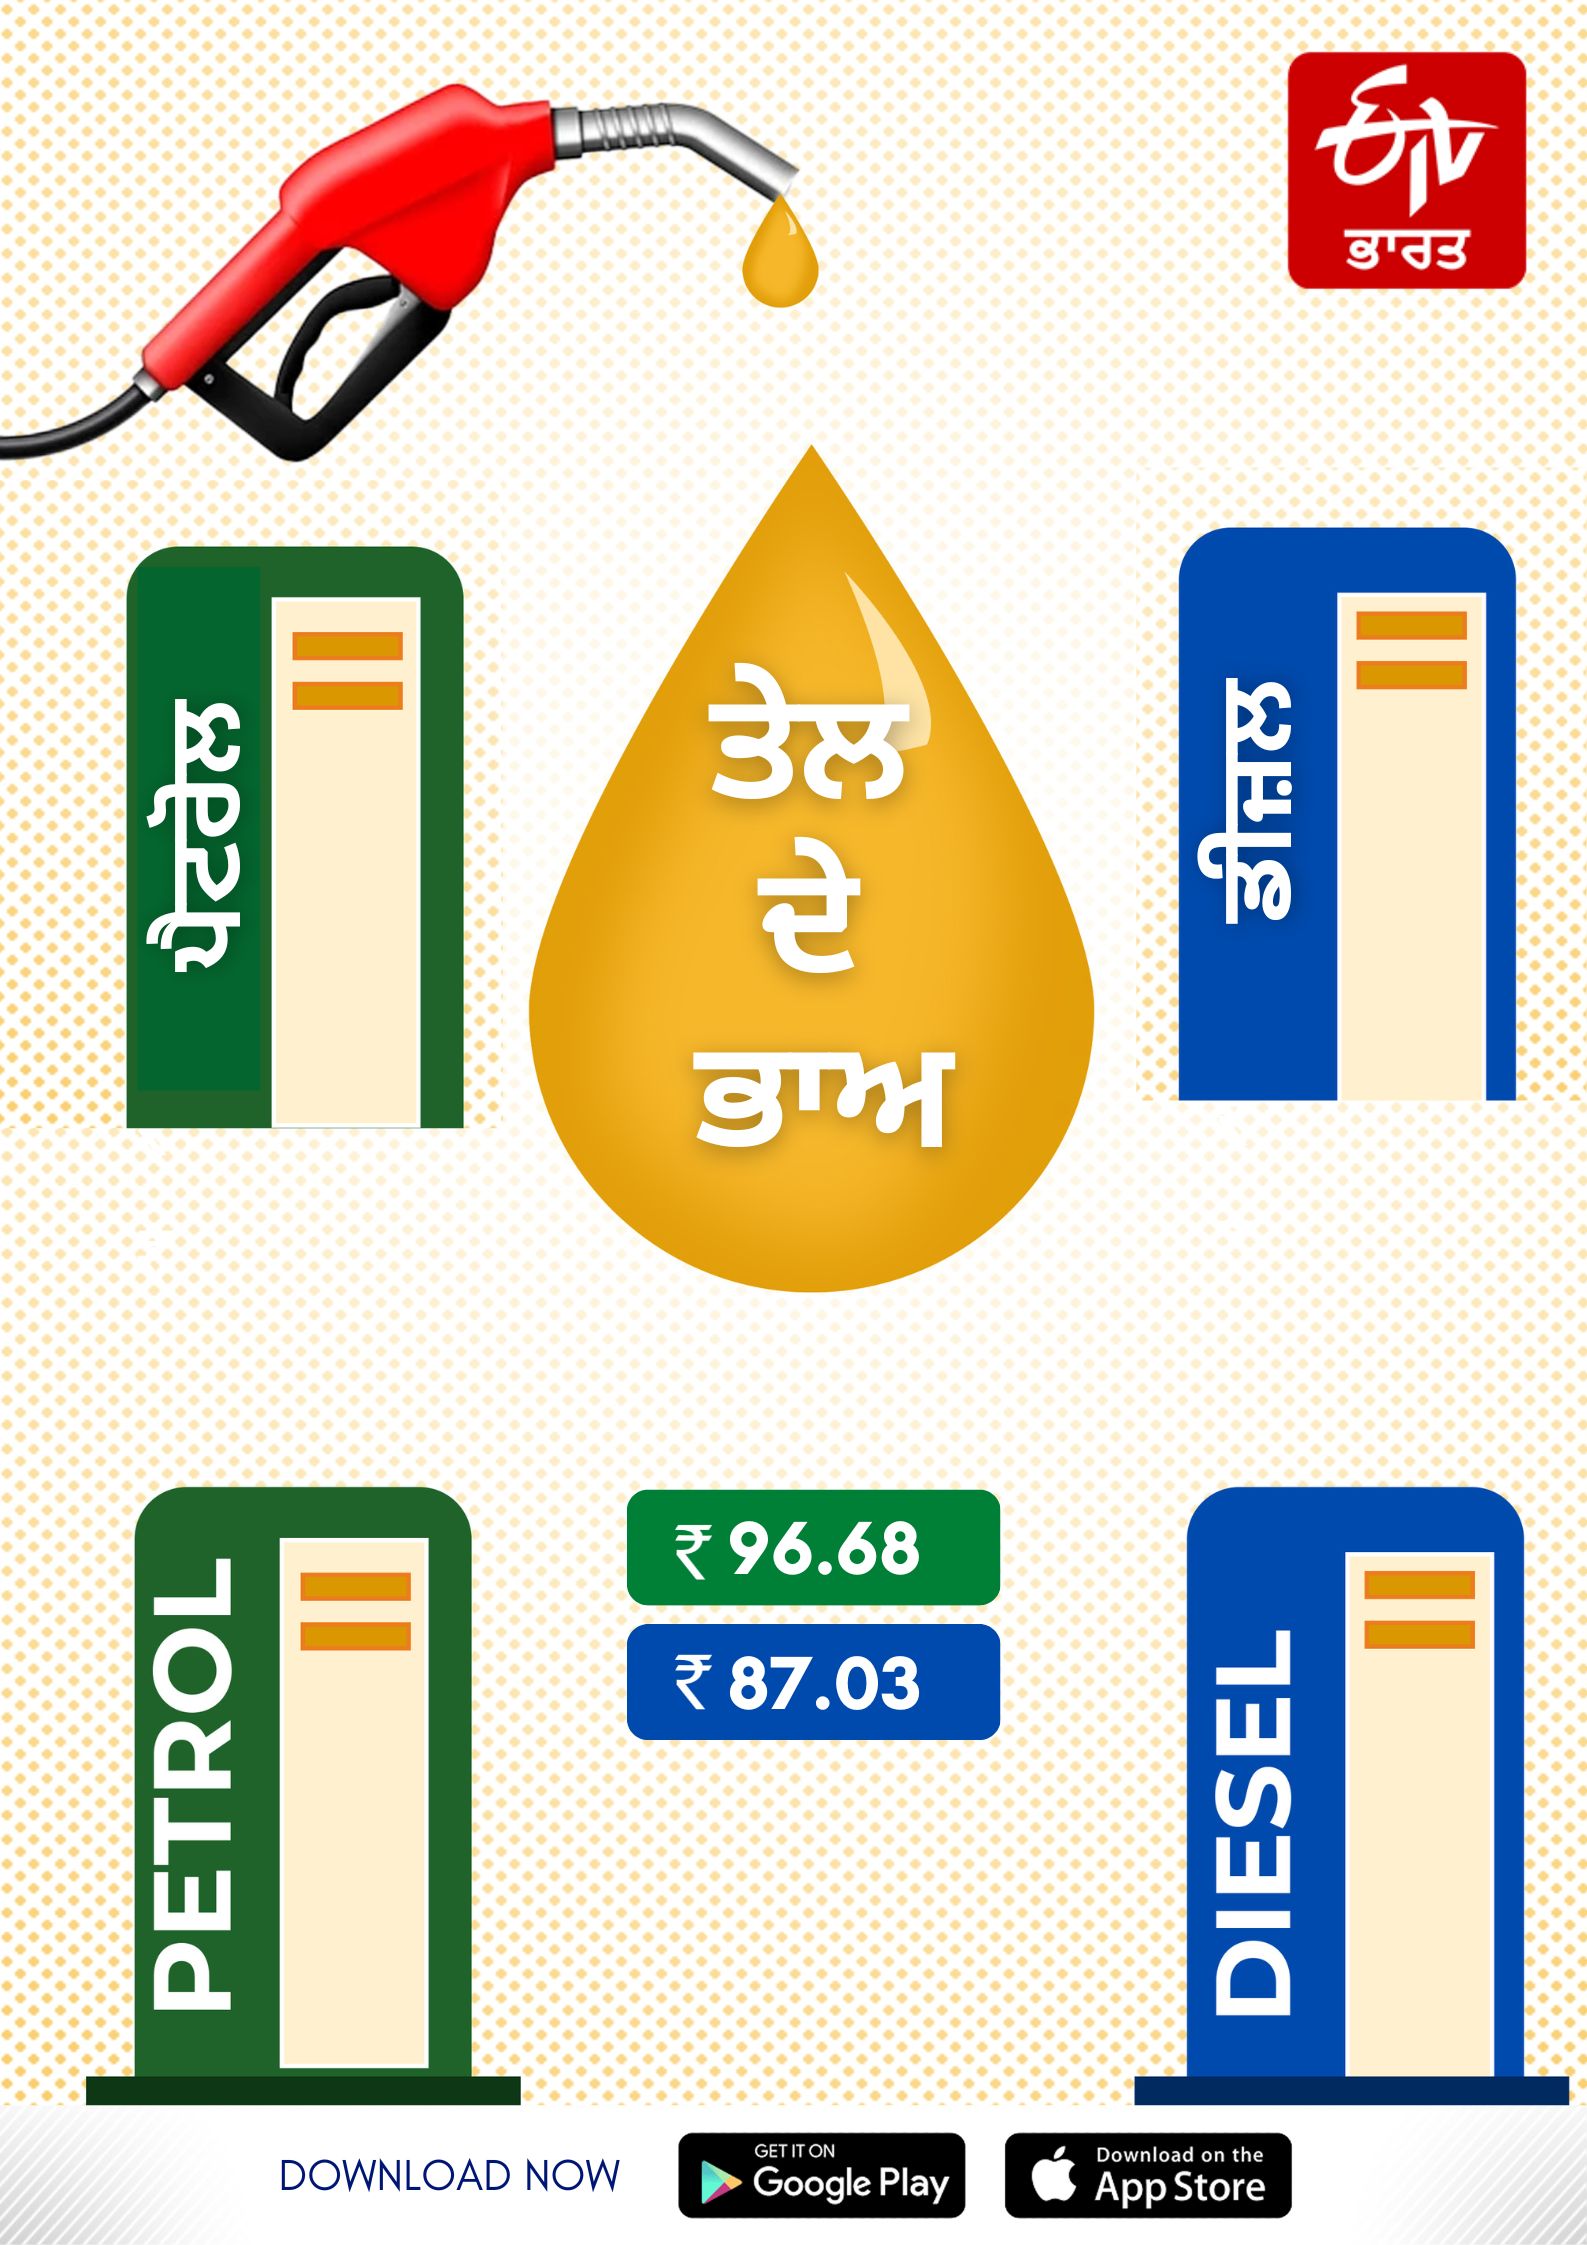 Petrol and Diesel Rates, etrol and Diesel Rates in Punjab